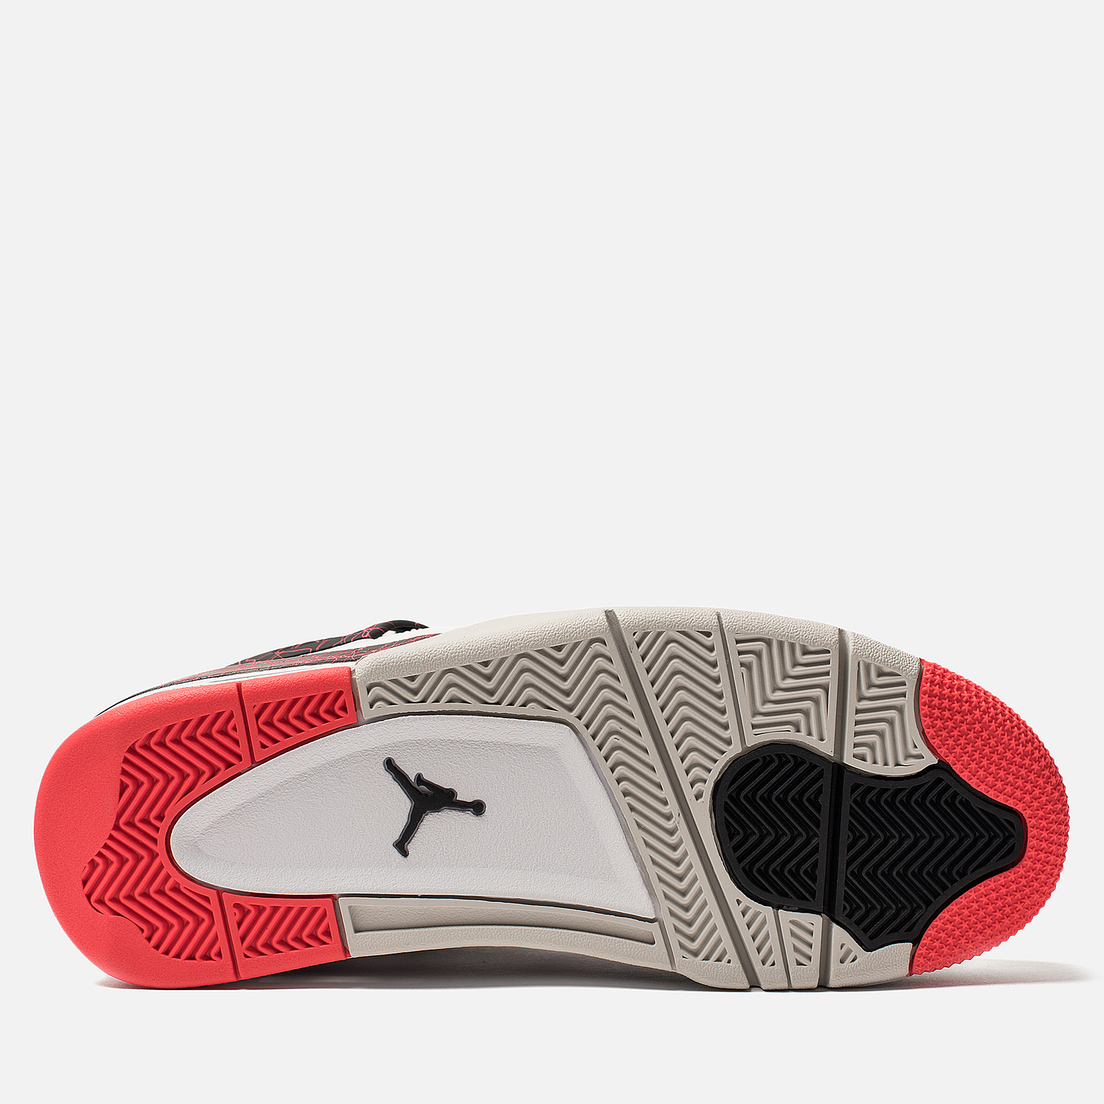 Jordan Мужские кроссовки Air Jordan 4 Retro